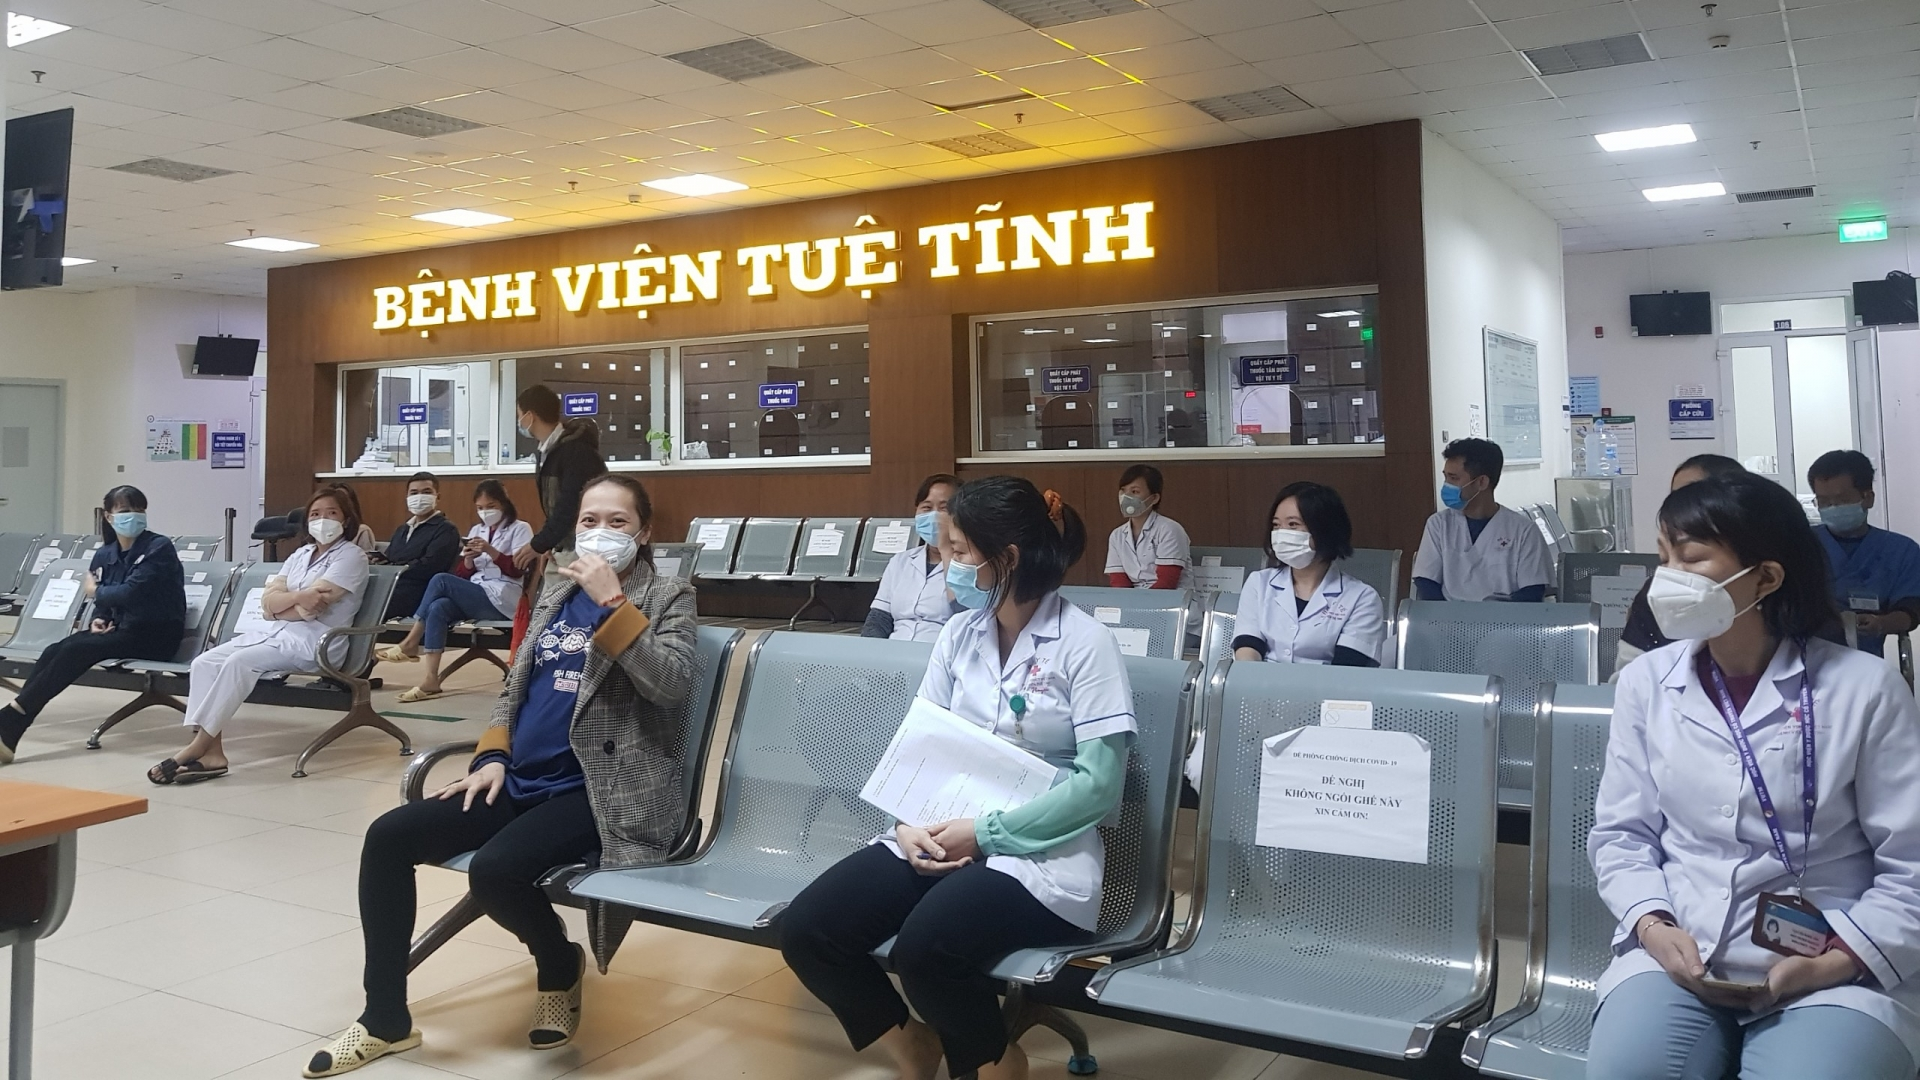 Bệnh viện Tuệ Tĩnh, thành phố Hà Nội